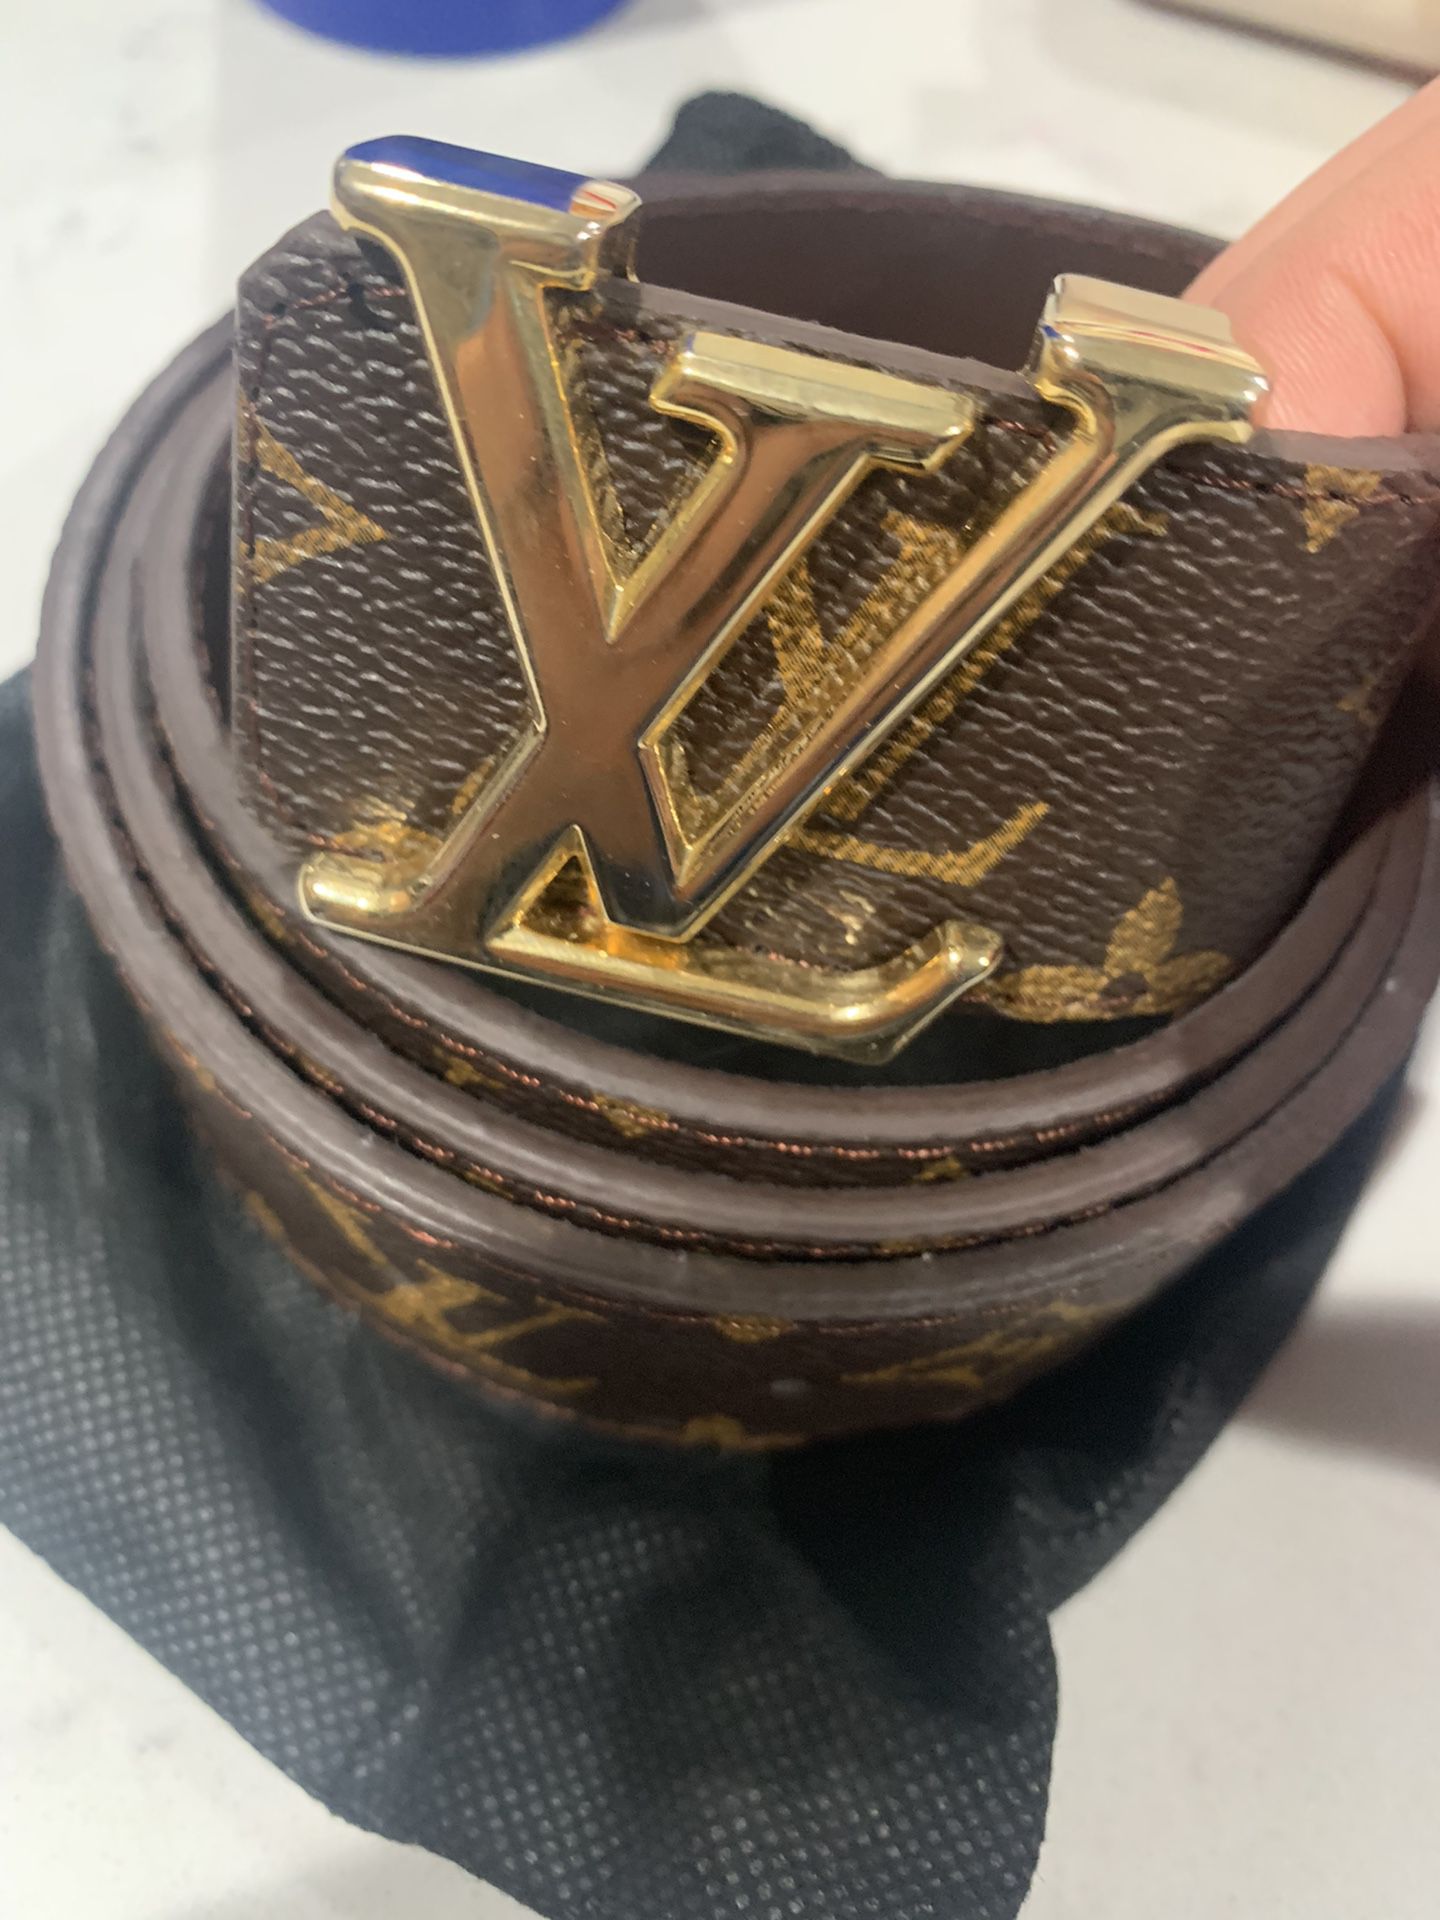 Louis Vuitton Men's Belt Size 120cm 50inch for Sale in Burlington, VT -  OfferUp